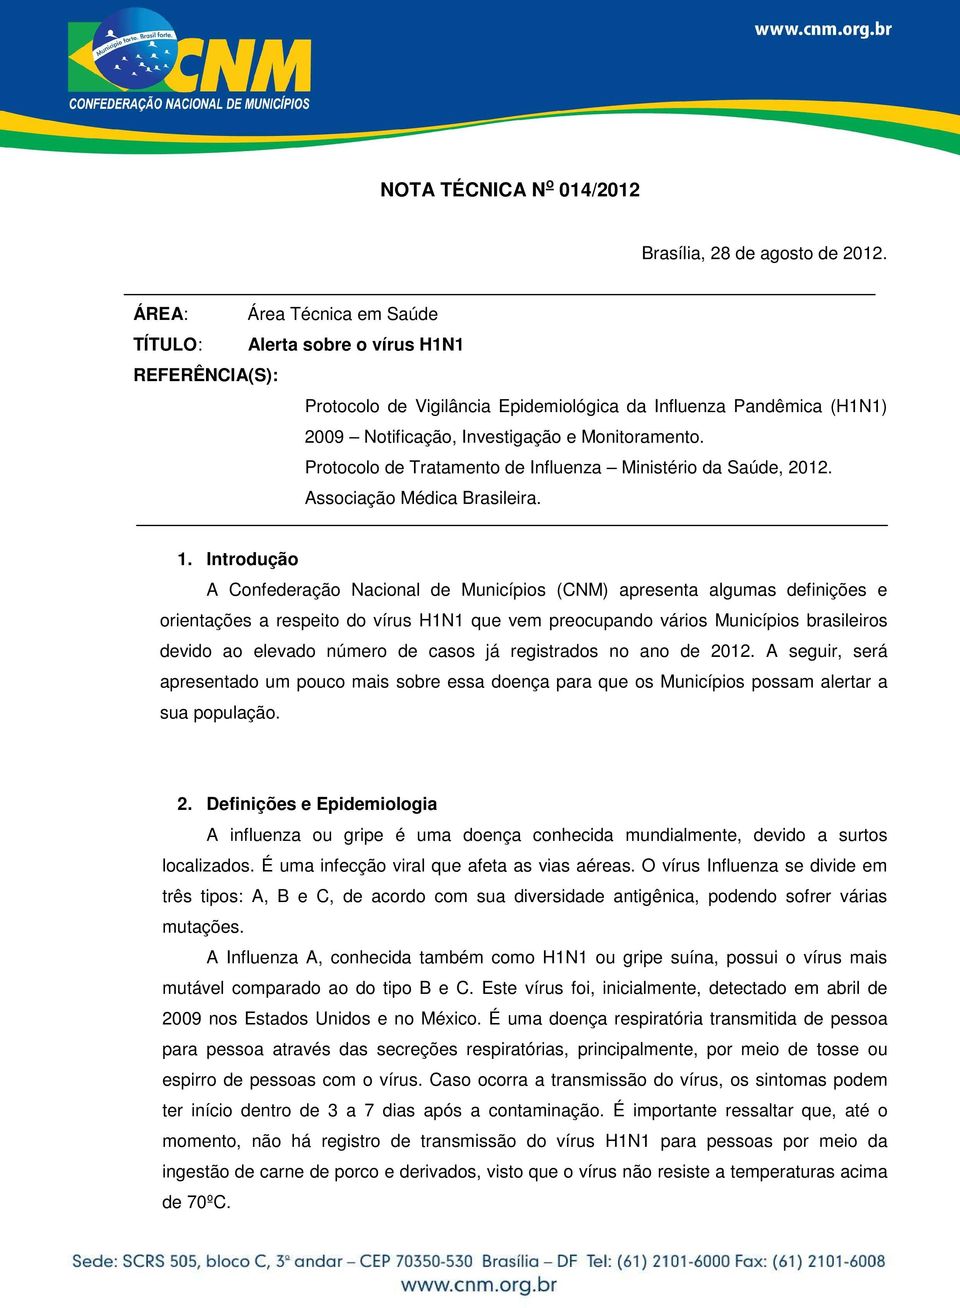 Protocolo de Tratamento de Influenza Ministério da Saúde, 2012. Associação Médica Brasileira. 1.